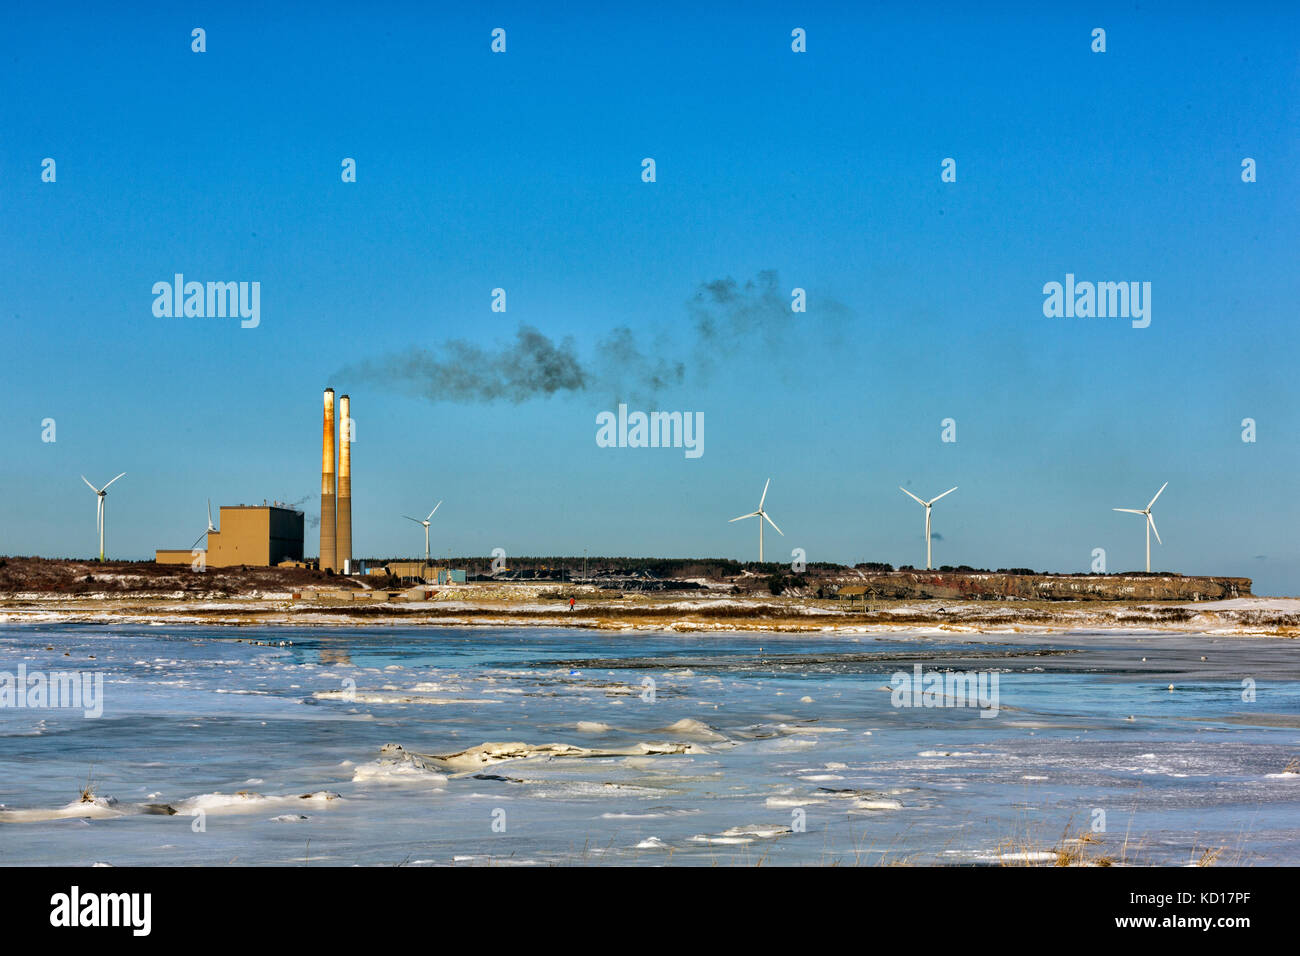 Vista de lingan estación generadora de carbón y turbinas eólicas del parque provincial dominion Beach, Cape Breton, Nova Scotia, Canadá Foto de stock